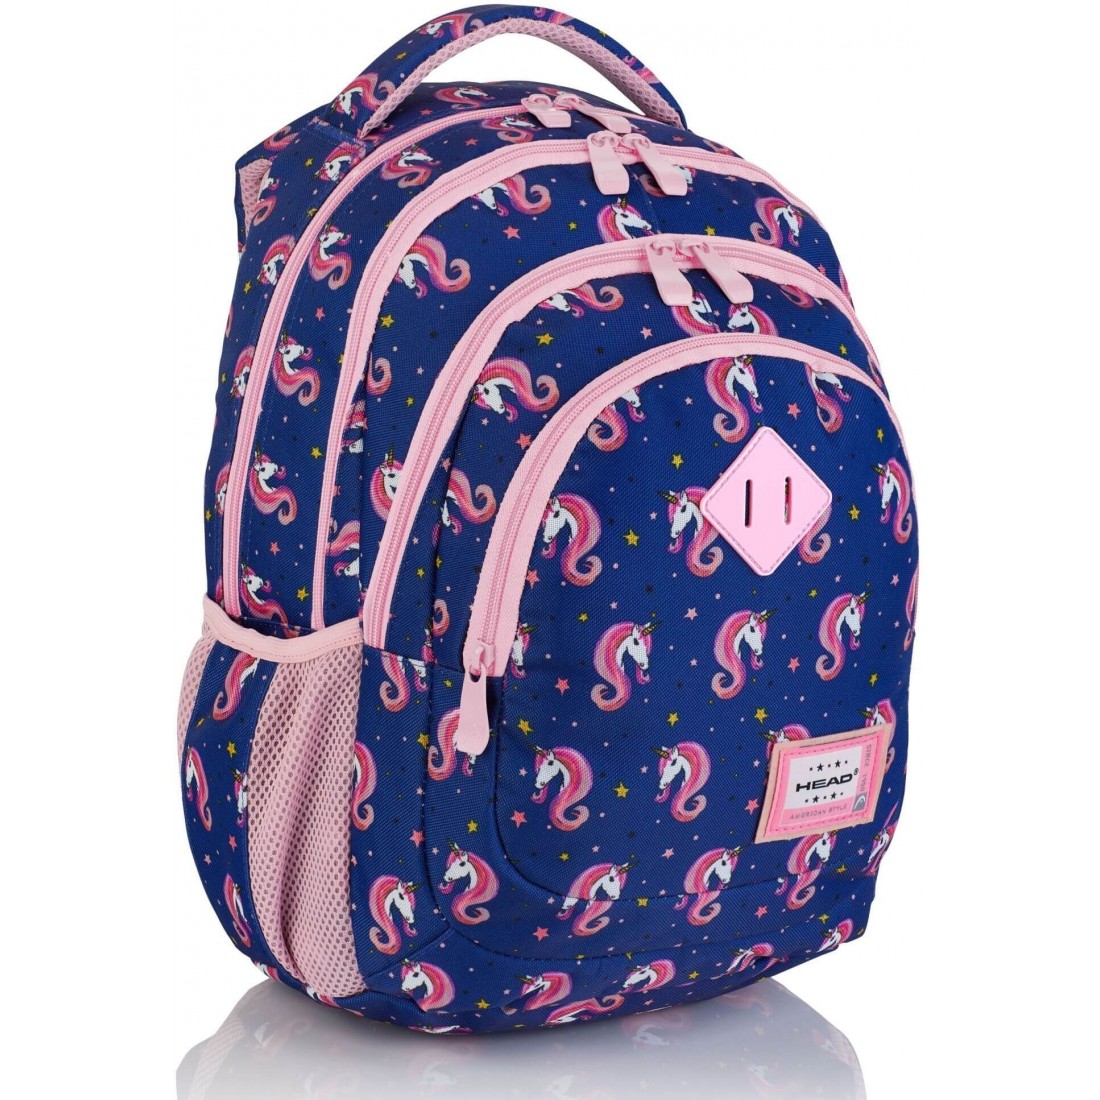 Plecak do 1 klasy dla dziewczynki Head Unicorn granatowy w jednorożce - plecak-tornister.pl